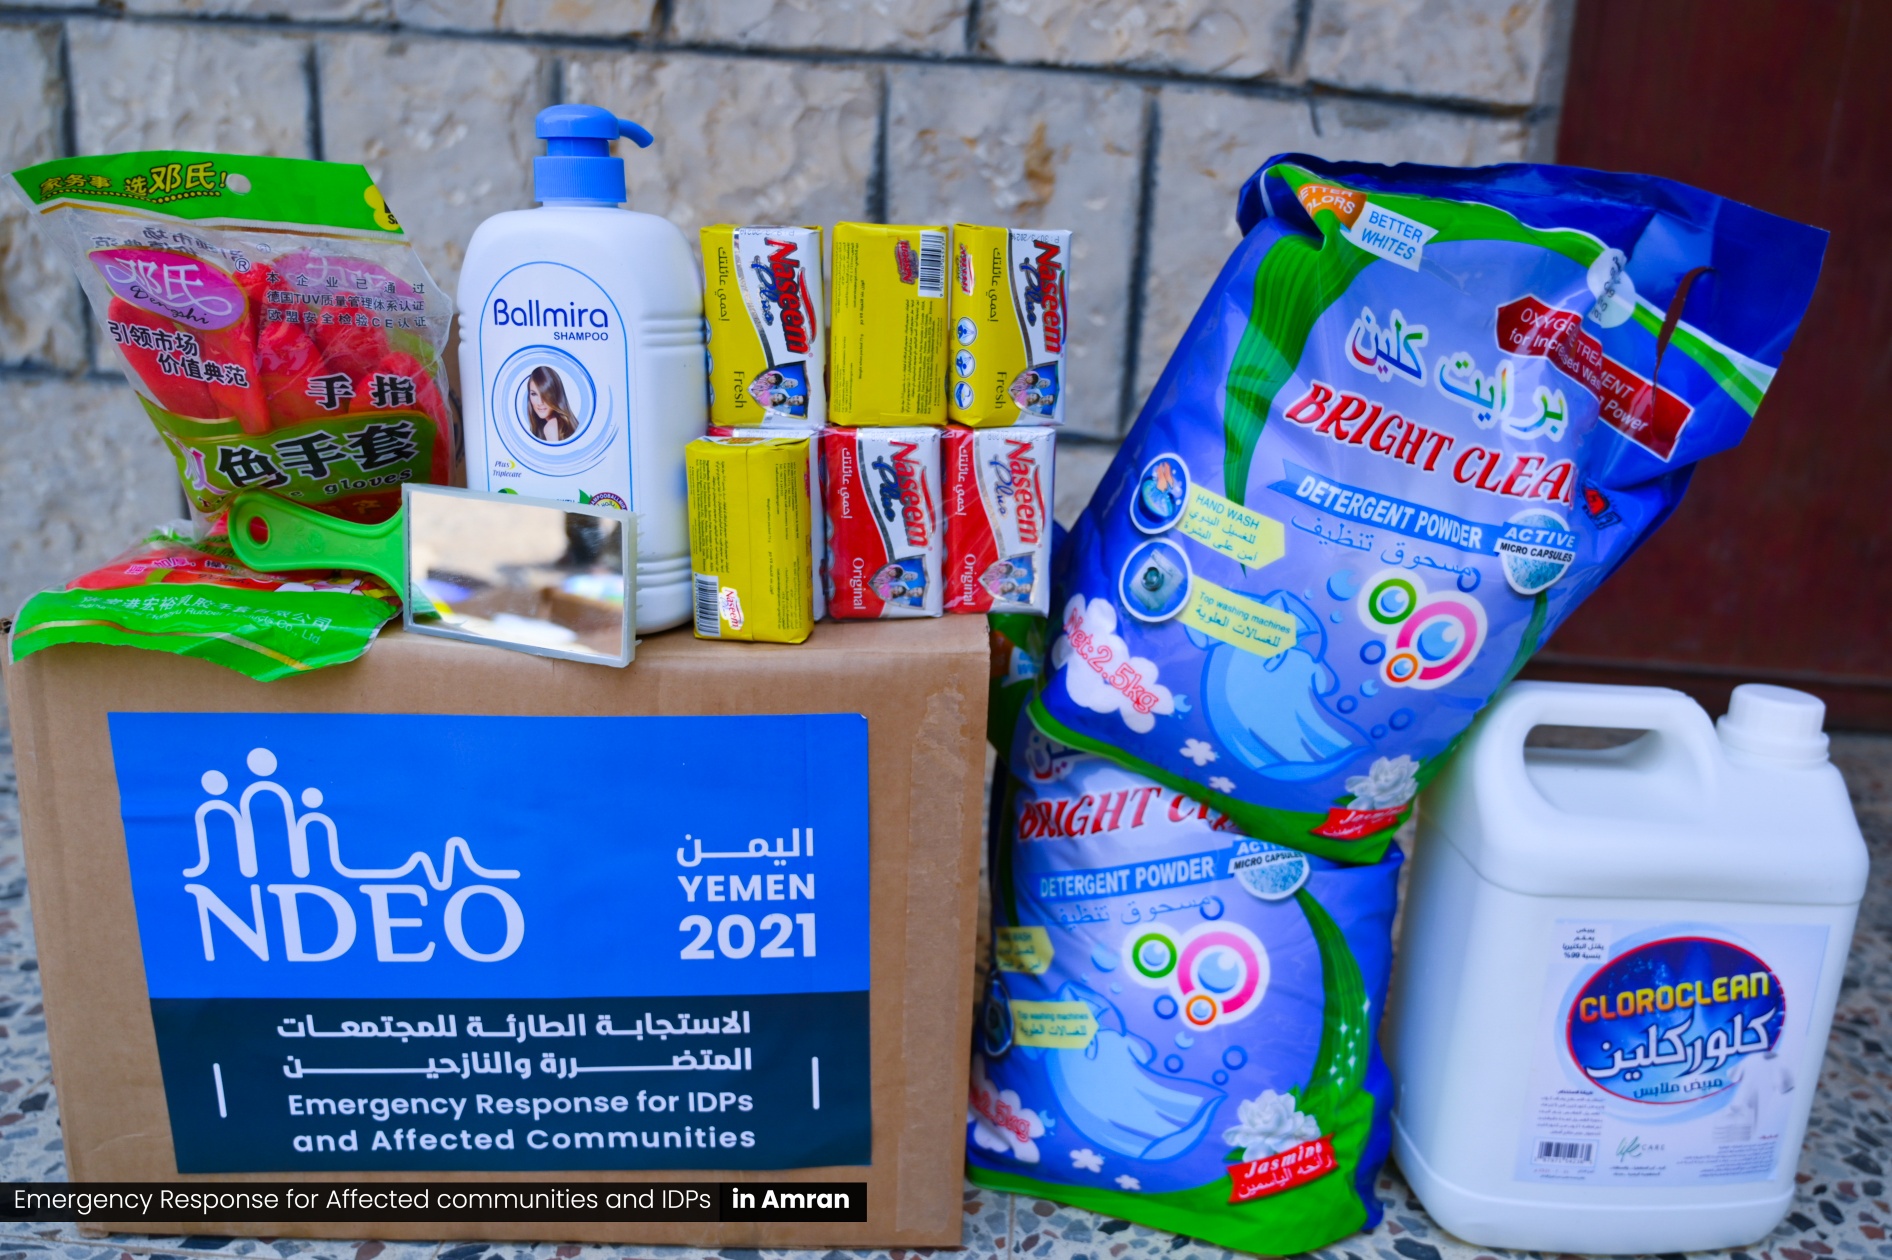 تنفيذ المرحلة الأولى من أنشطة دعم النازحين من خلال توزيع ٣٣٣ حقيبة نظافة شخصية